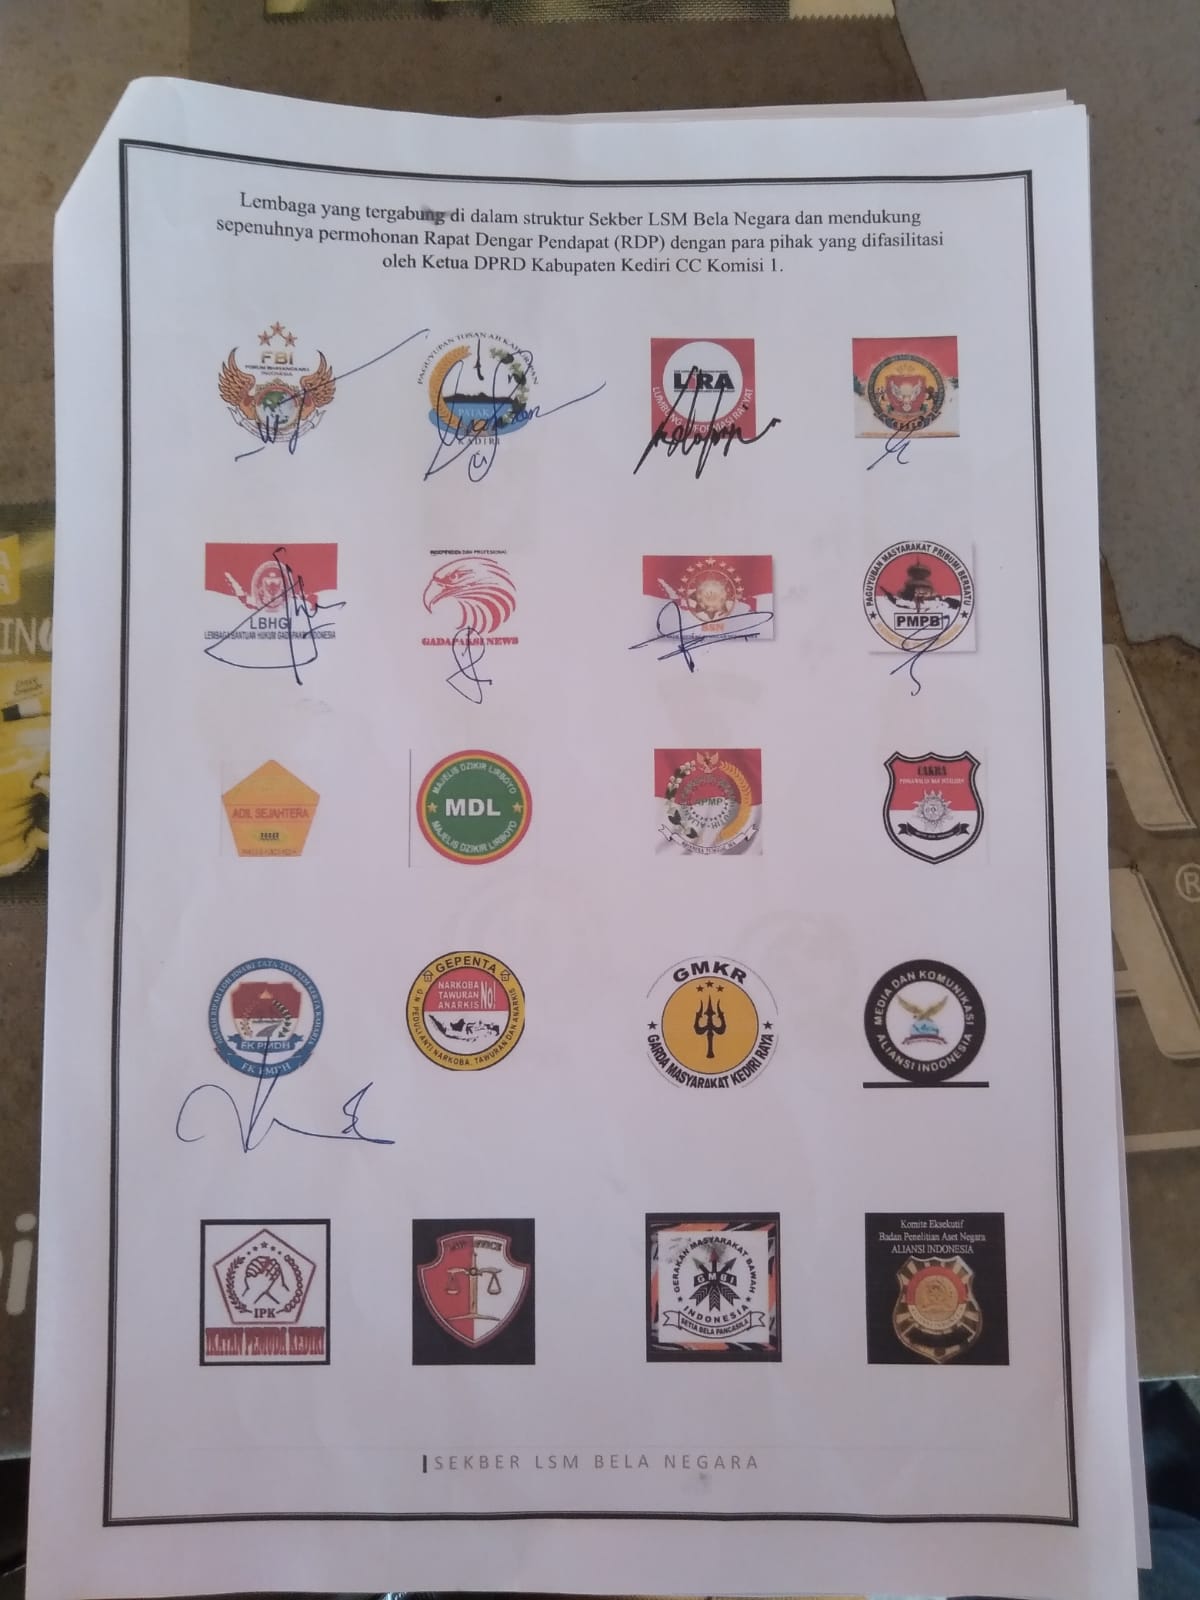 Sekber LSM Bela Negara Mengadukan Kasus Mangli Ke DPRD Kabupaten Kediri